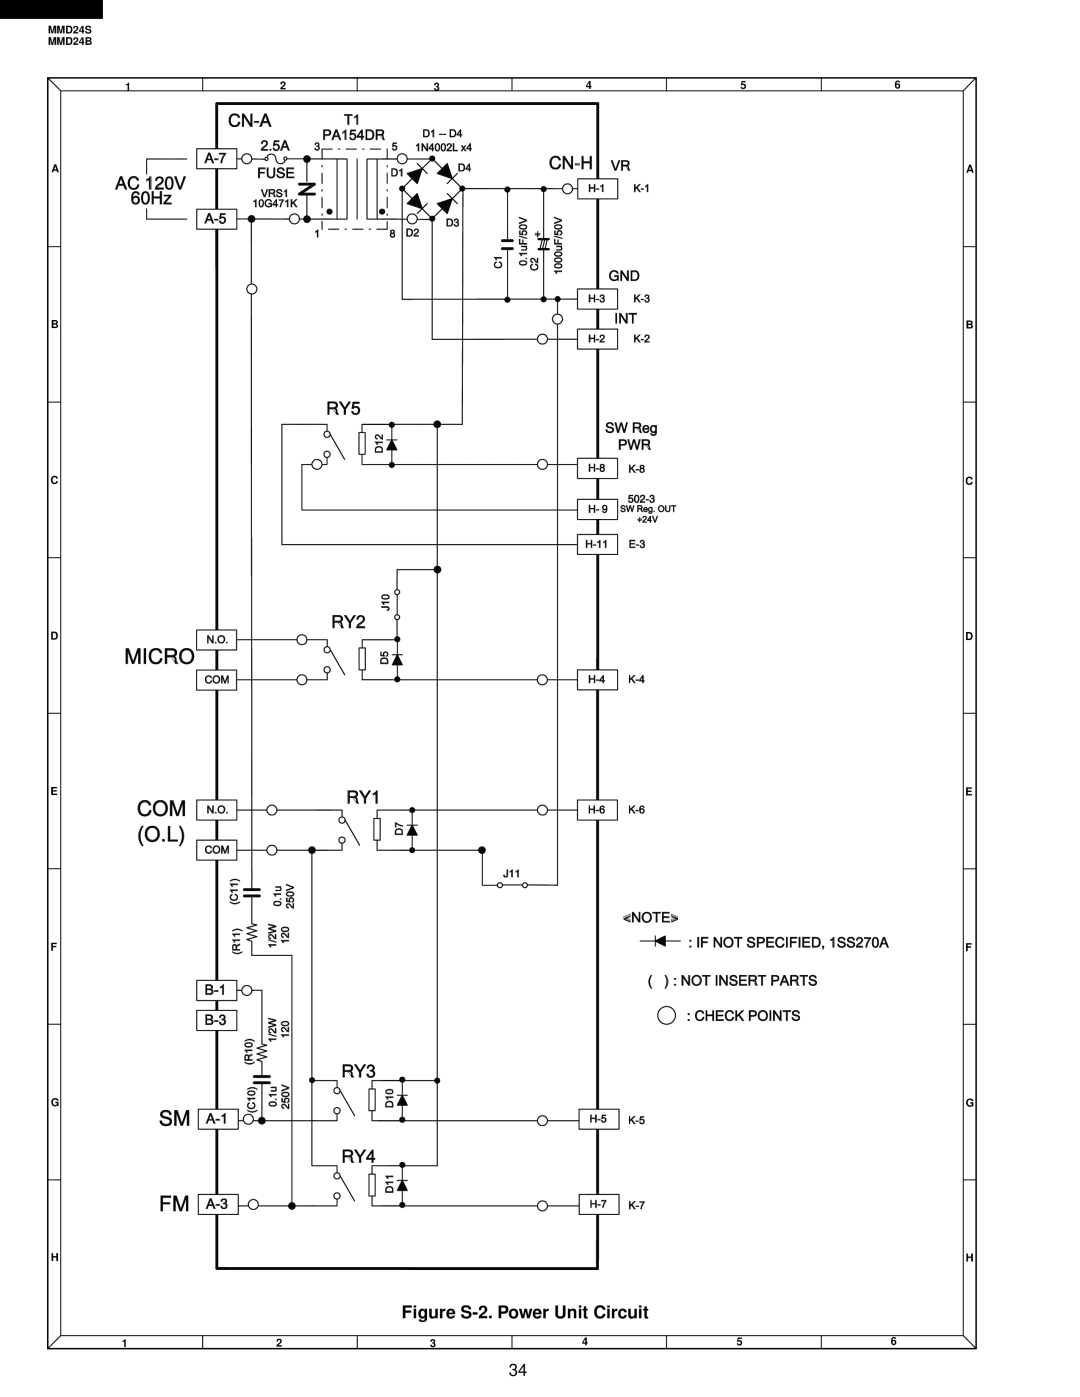 Sharp MMD24B, MMD24S manual Micro, Fm A, Cn-A, Cn-H, 60Hz, Figure S-2. Power Unit Circuit 